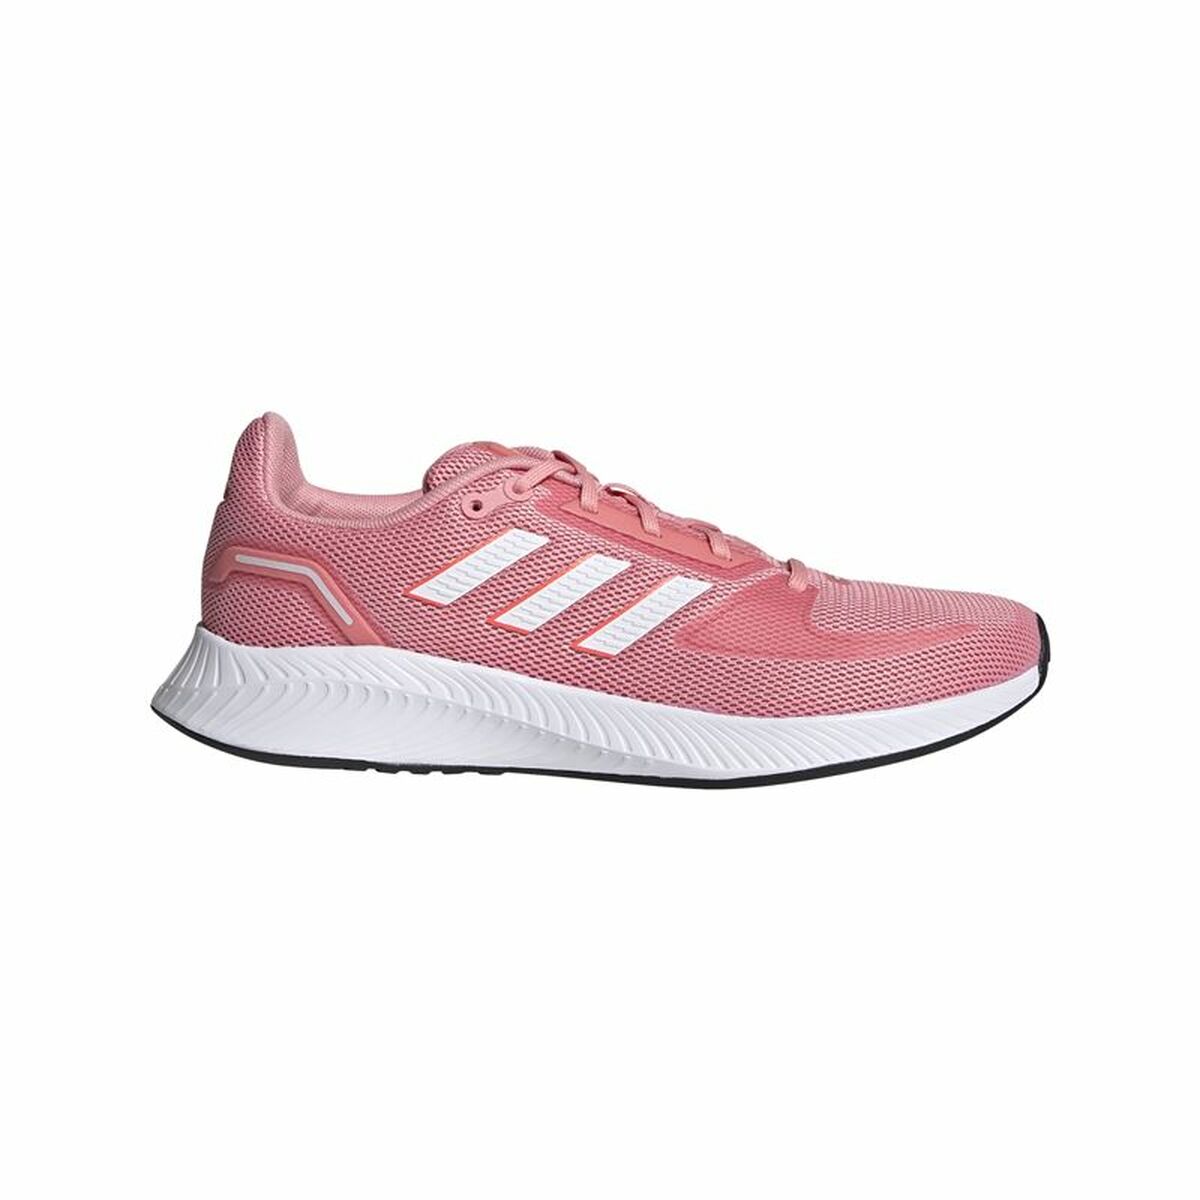 Încălțăminte de Running pentru Adulți Adidas Runfalcon 2.0 Femeie Roz - Mărime la picior 39 1/3